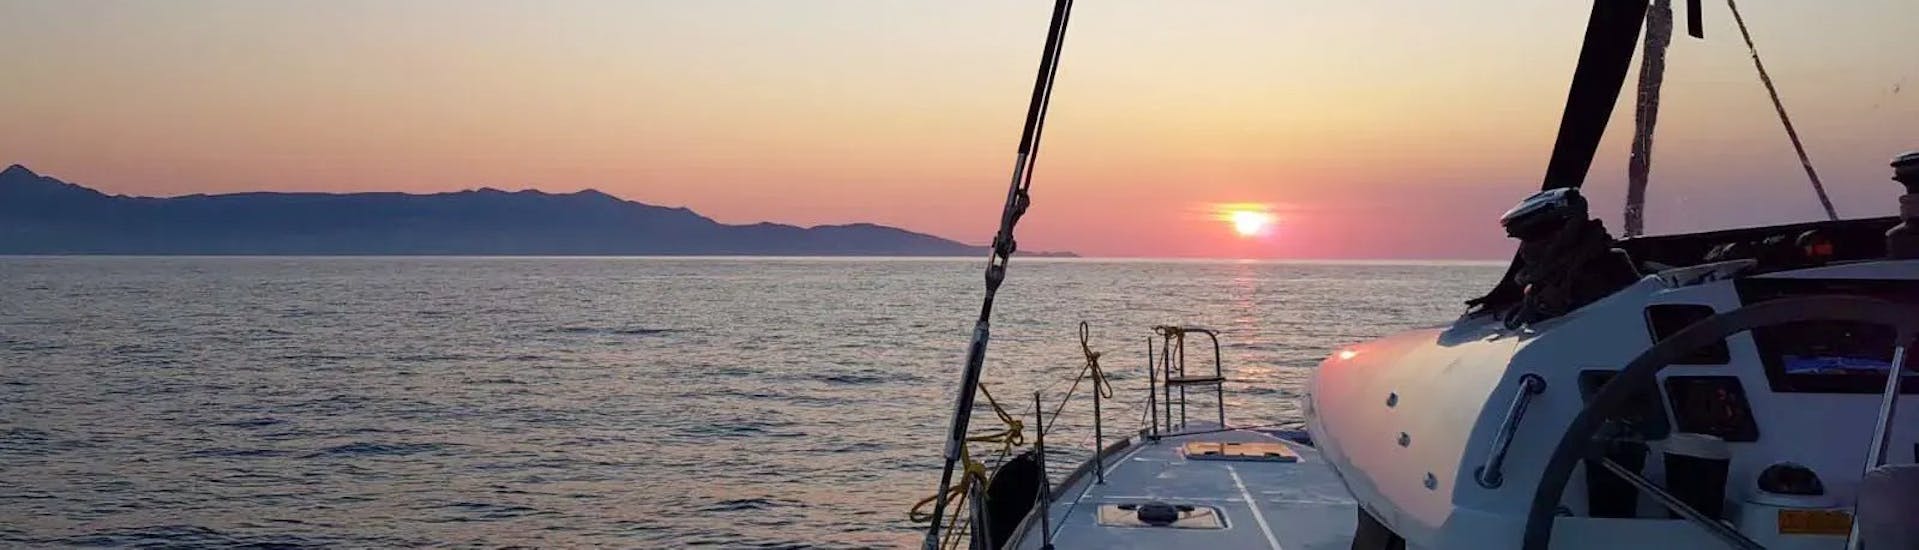 Nuestro catamarán durante el viaje al atardecer a la isla Dia desde Heraclión, con DanEri Yachts Crete.